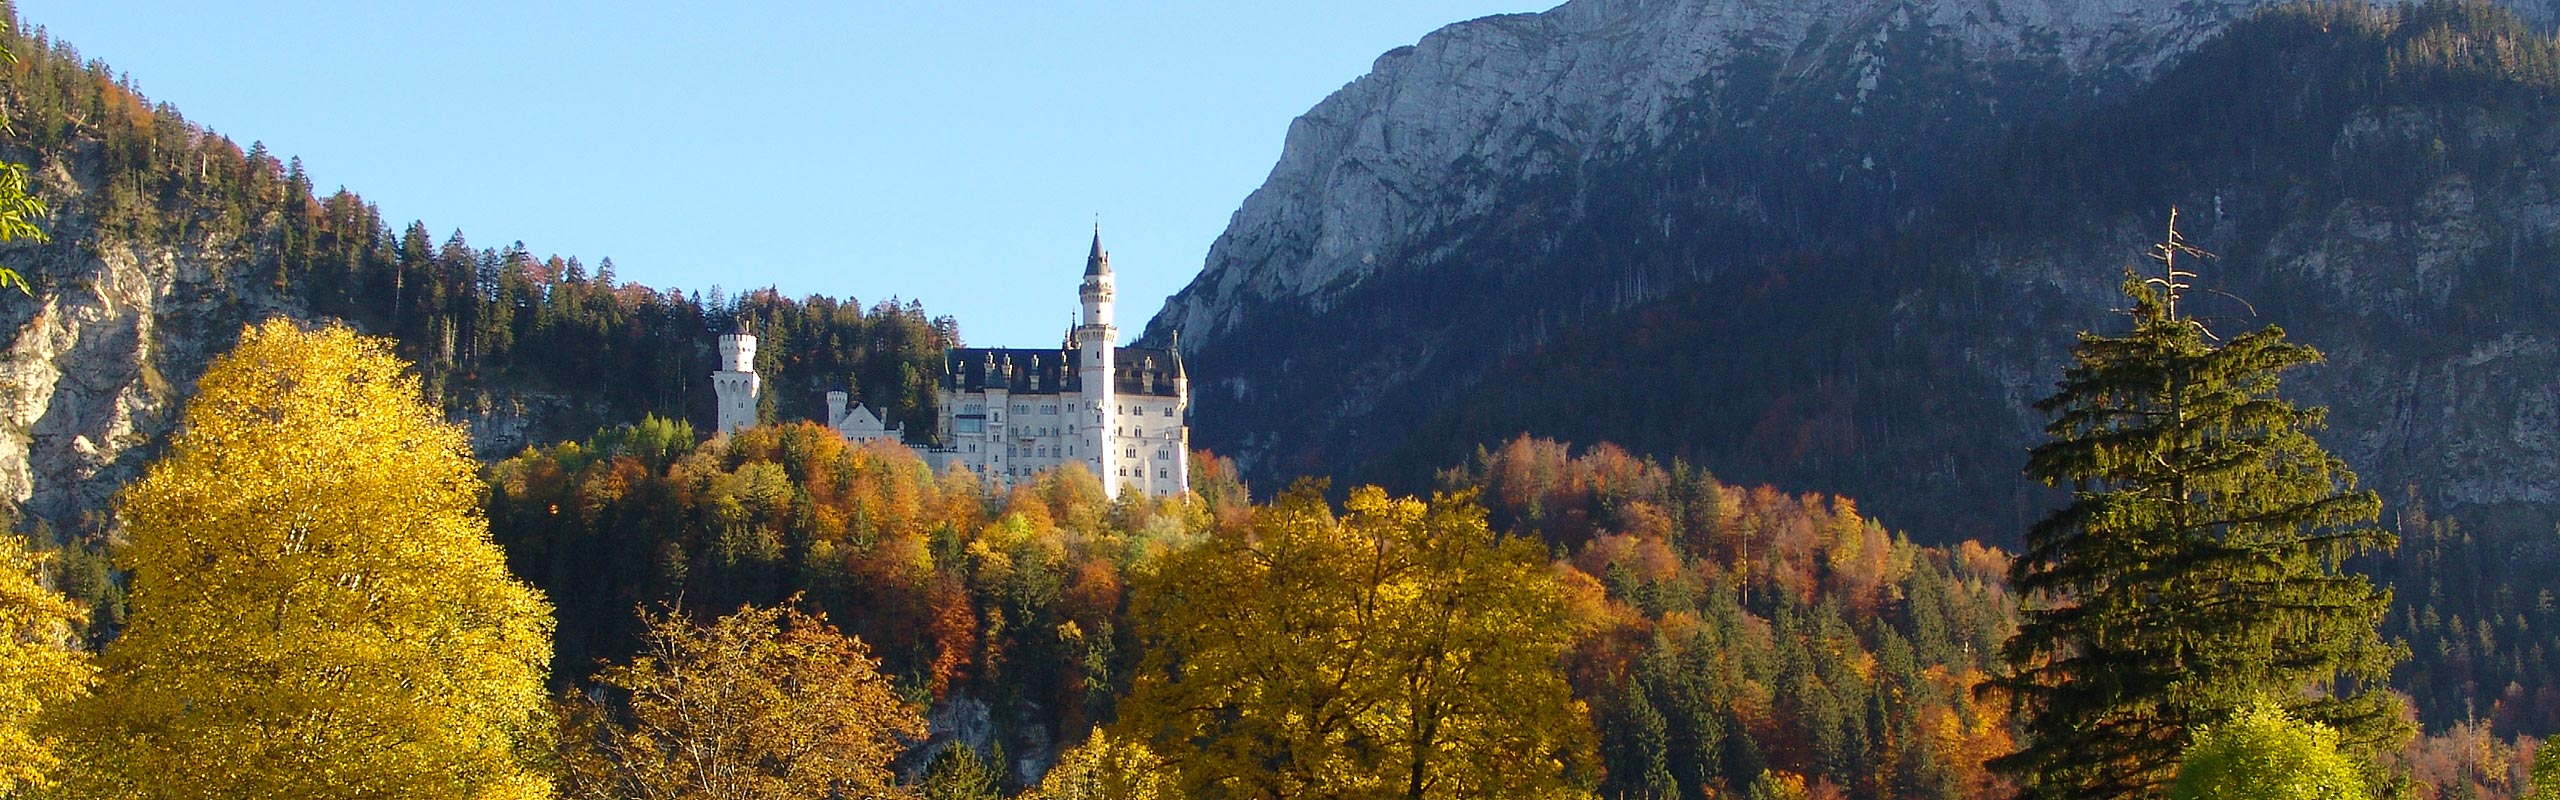 Ausflugsziel Schloss Neuschwanstein im Allgäu